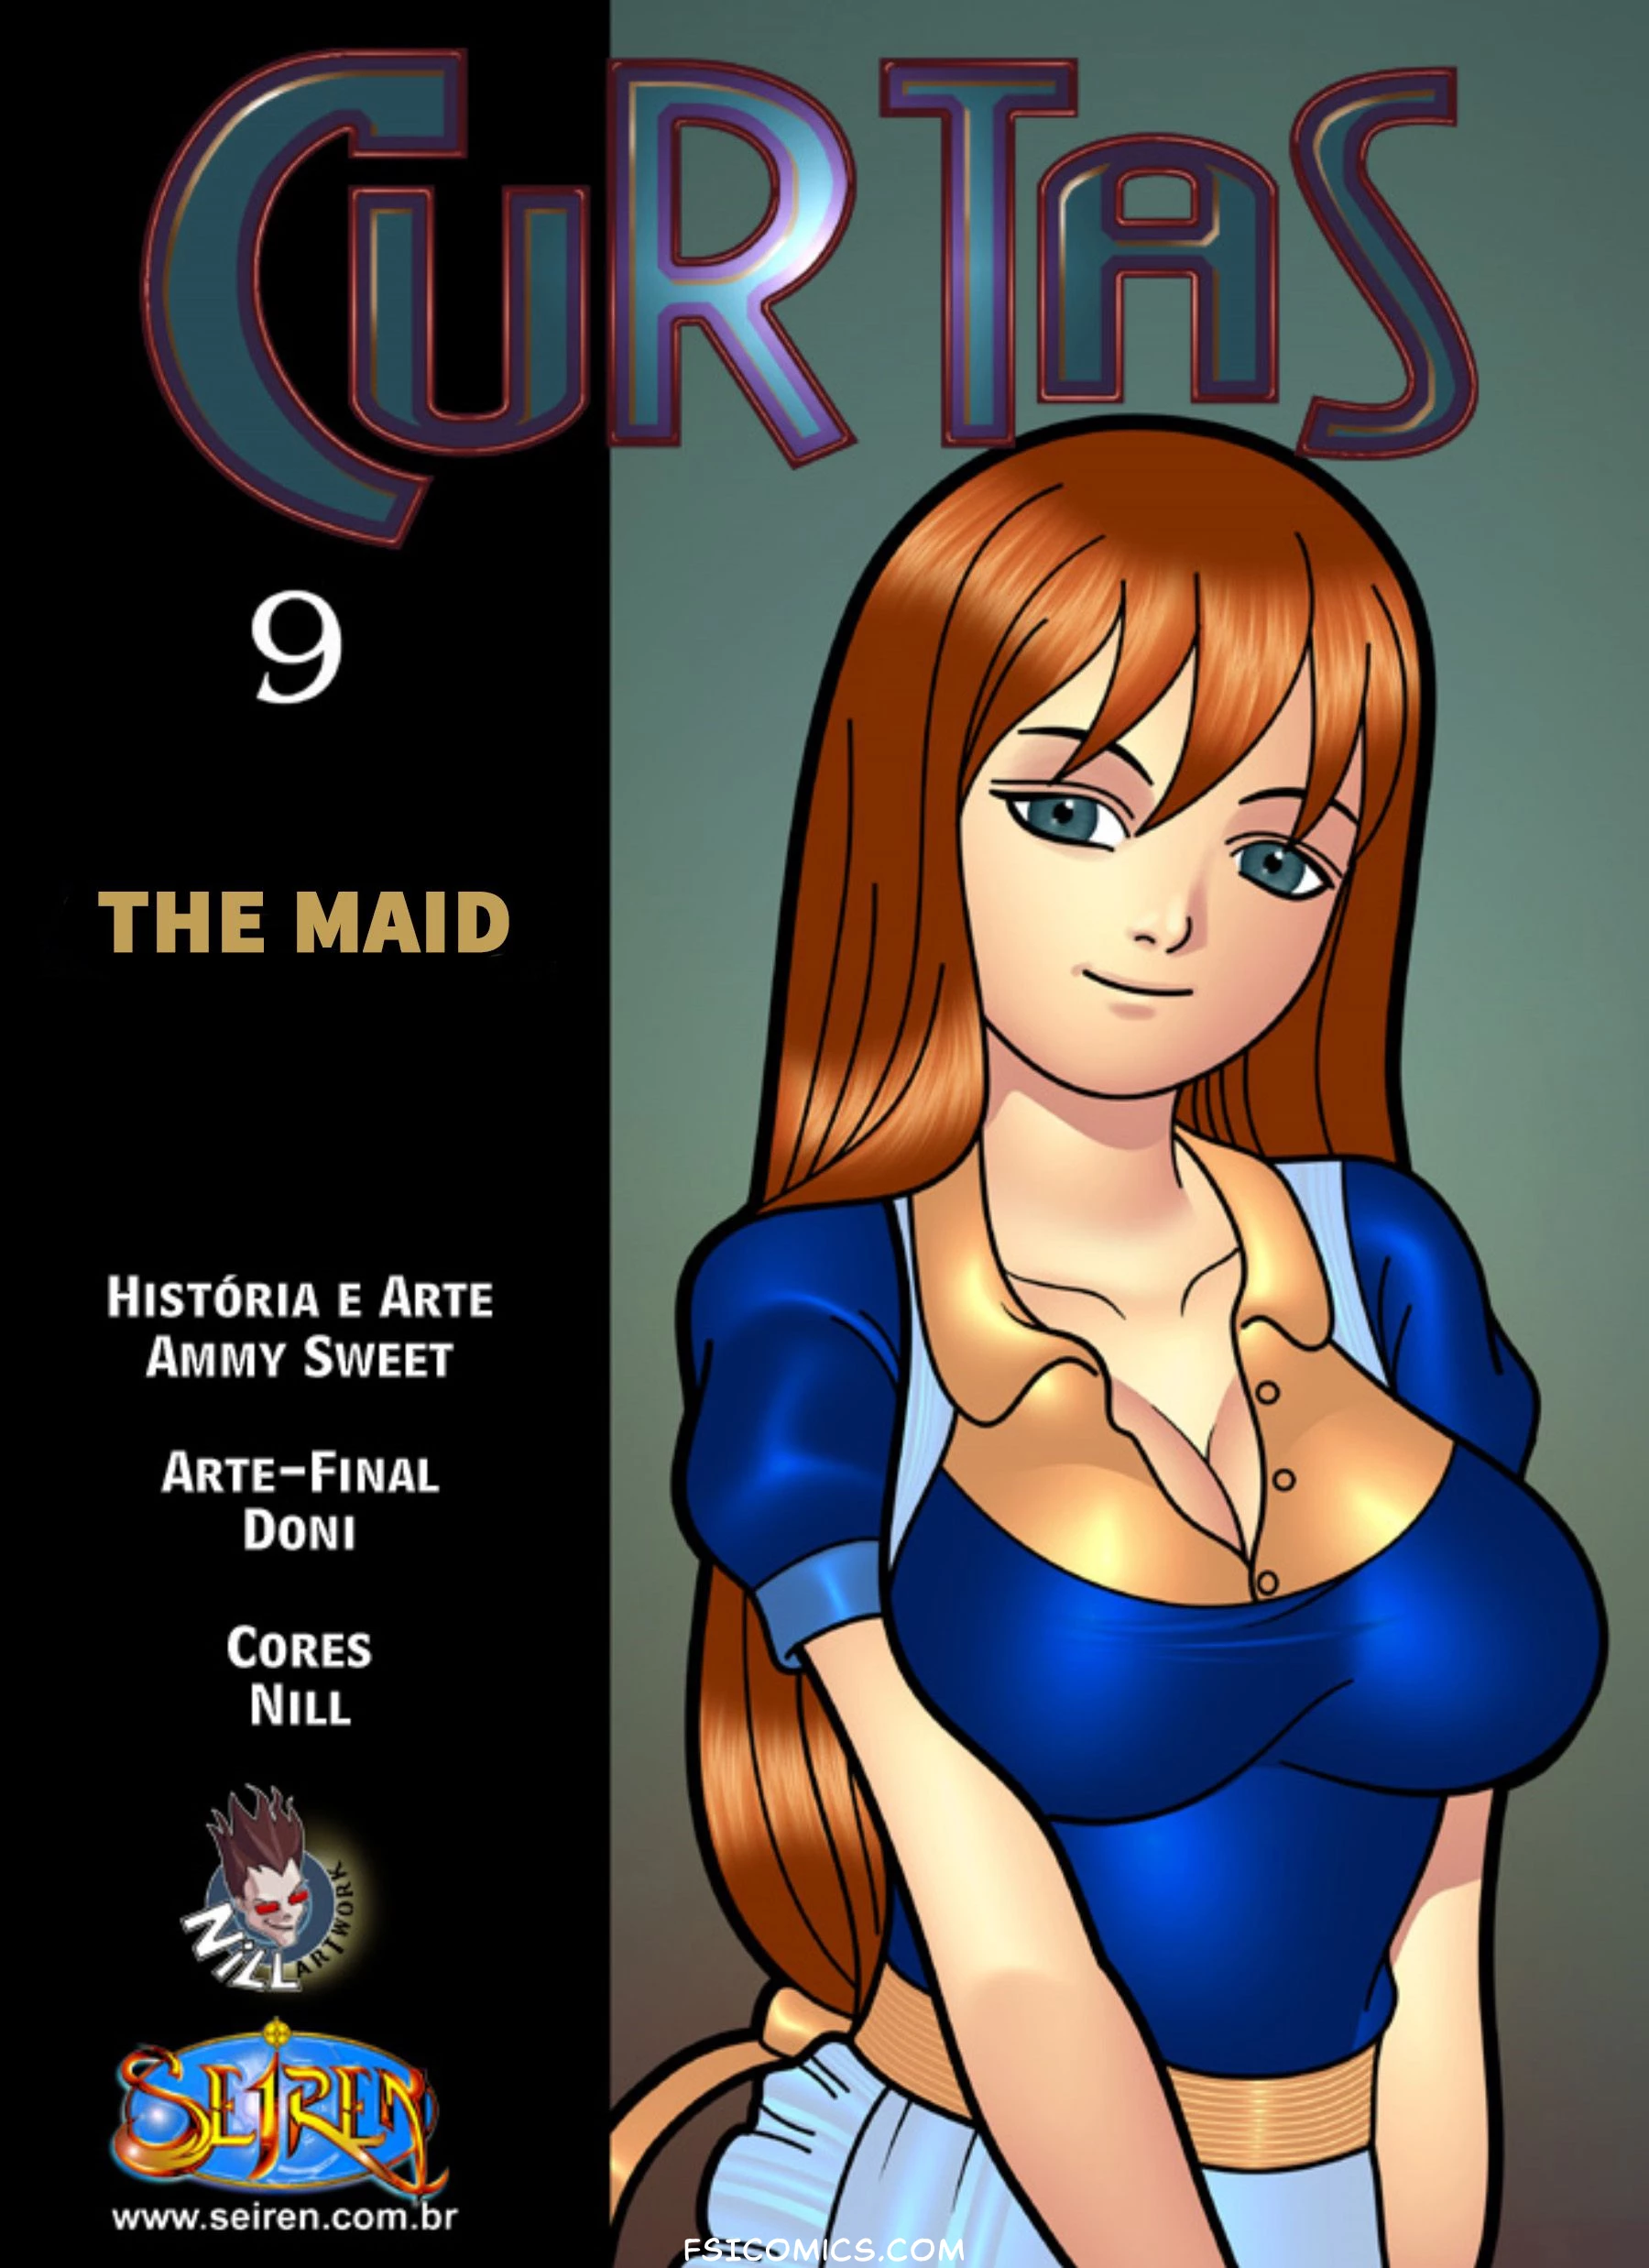 Curtas Chapter 9 - The Maid – Seiren - 65 - FSIComics